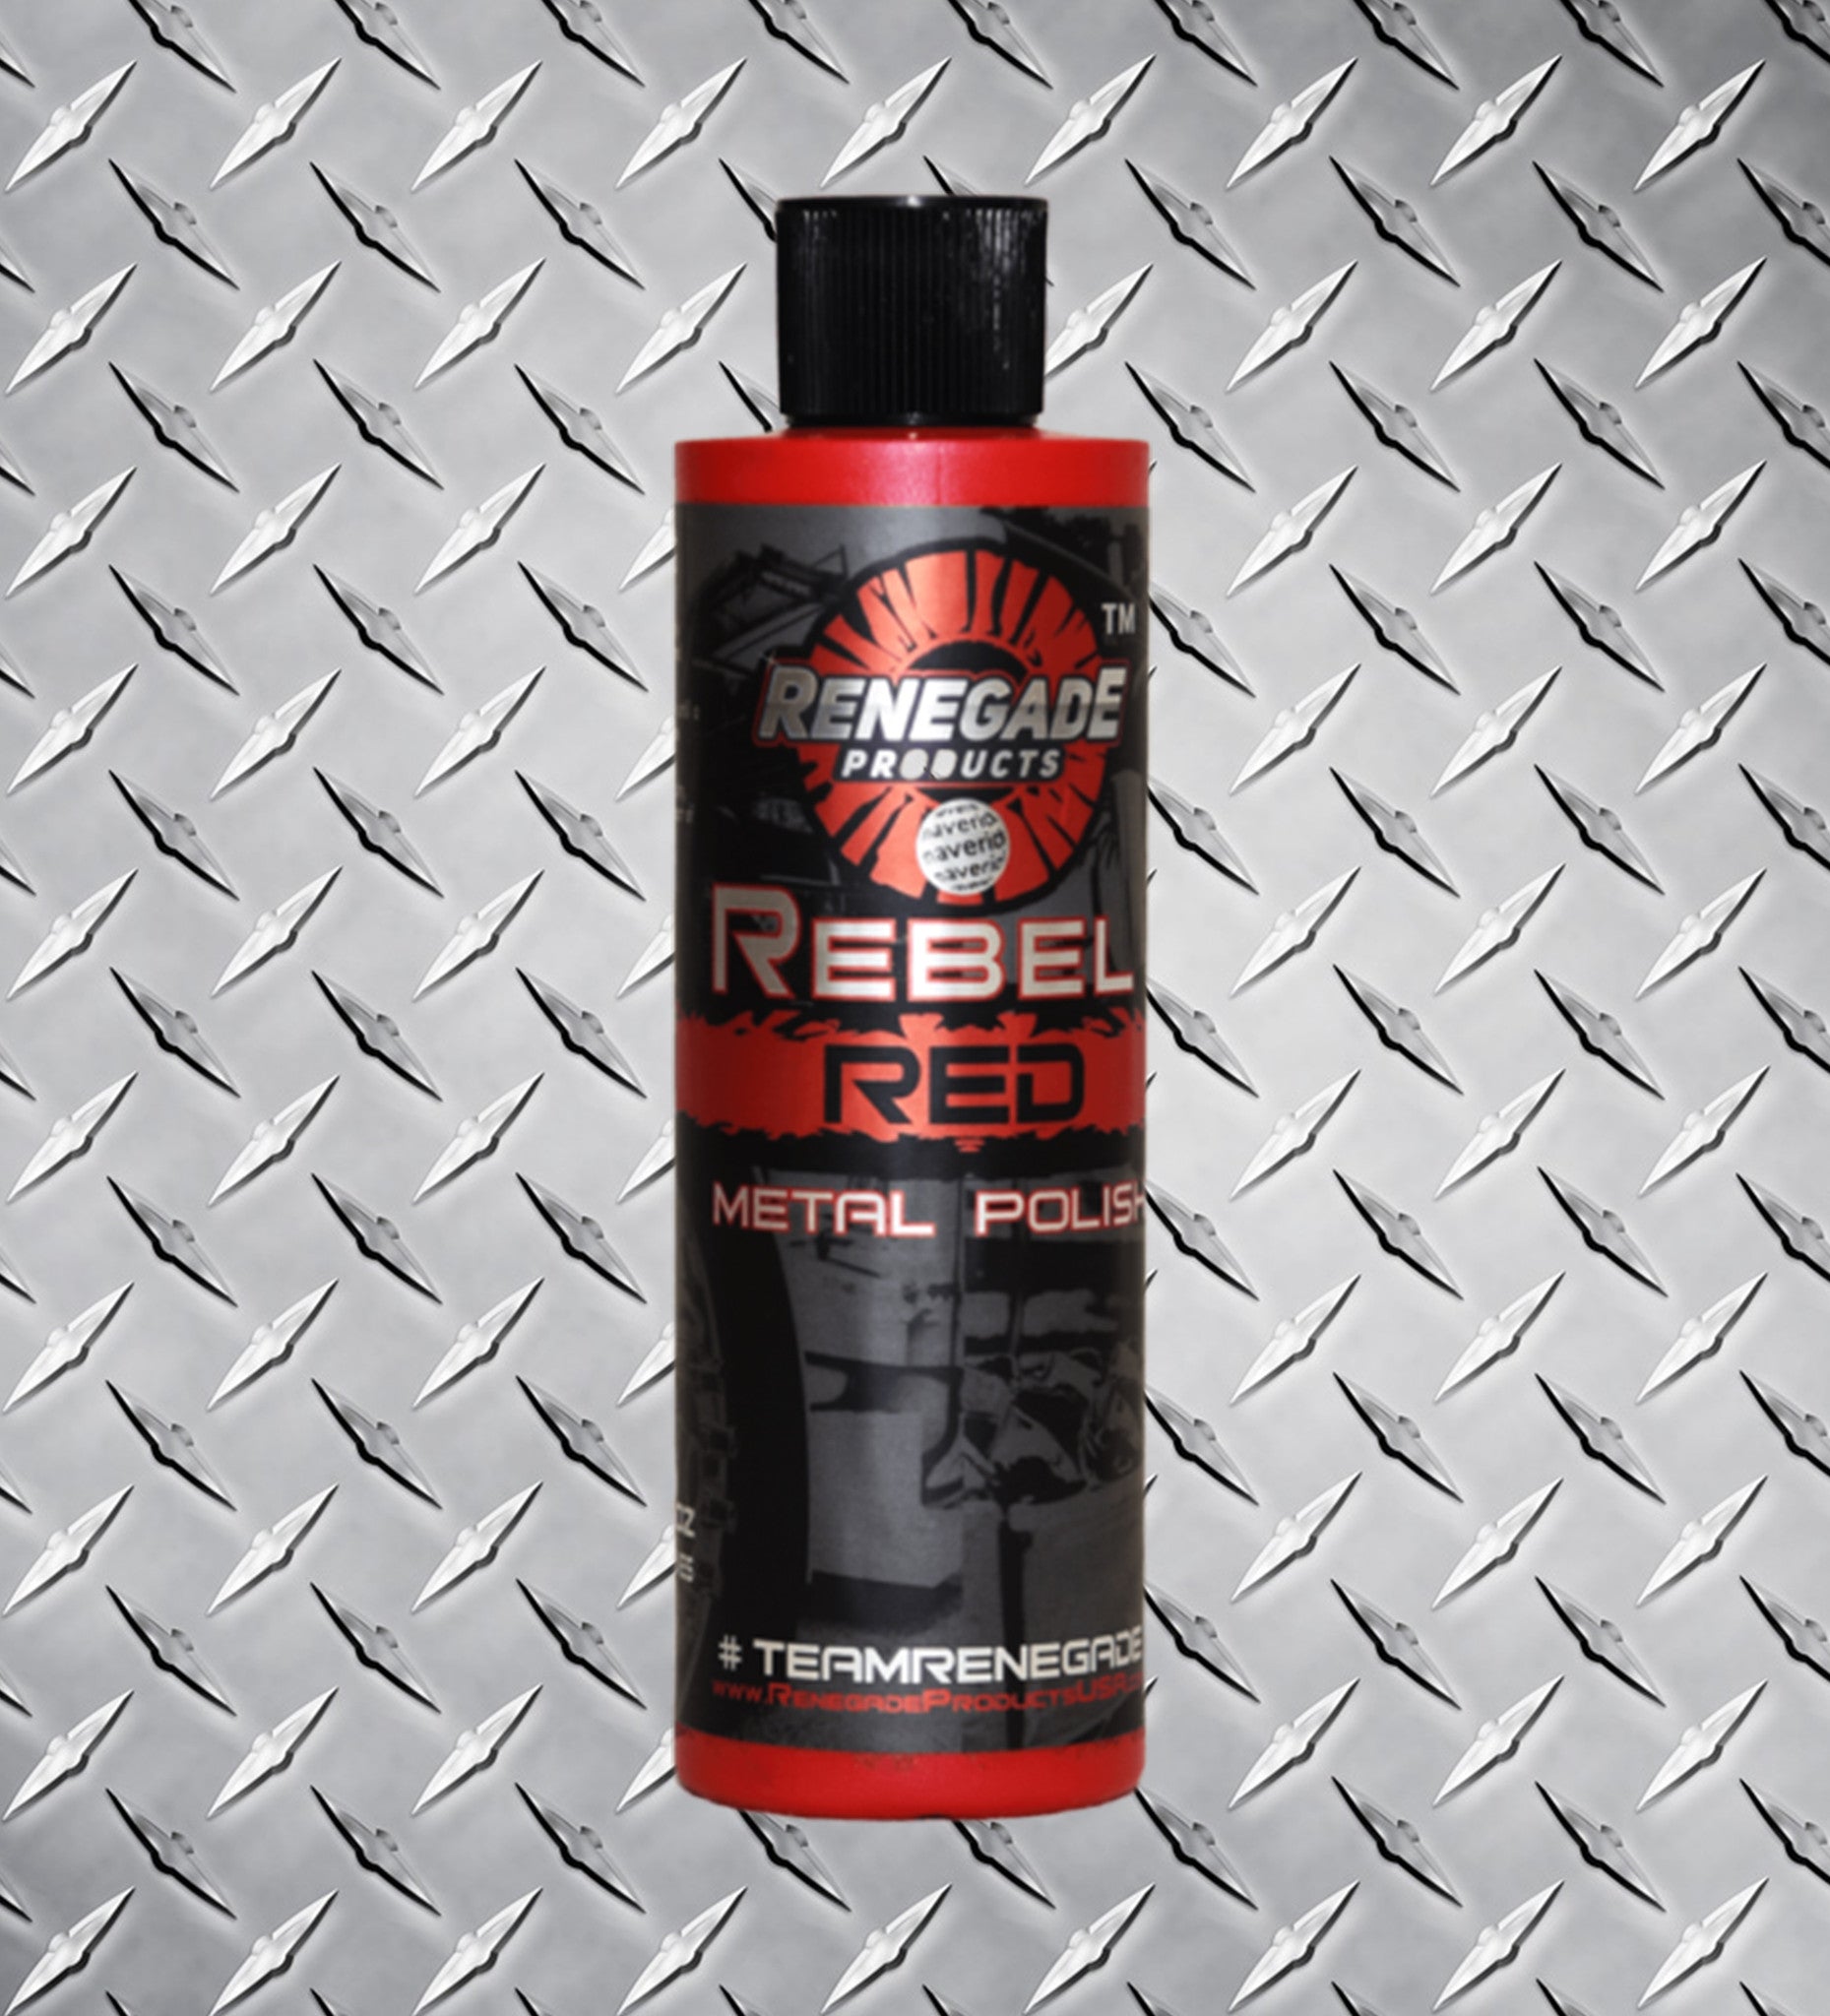 Rebel Red Metal Polish 12 oz bottle 